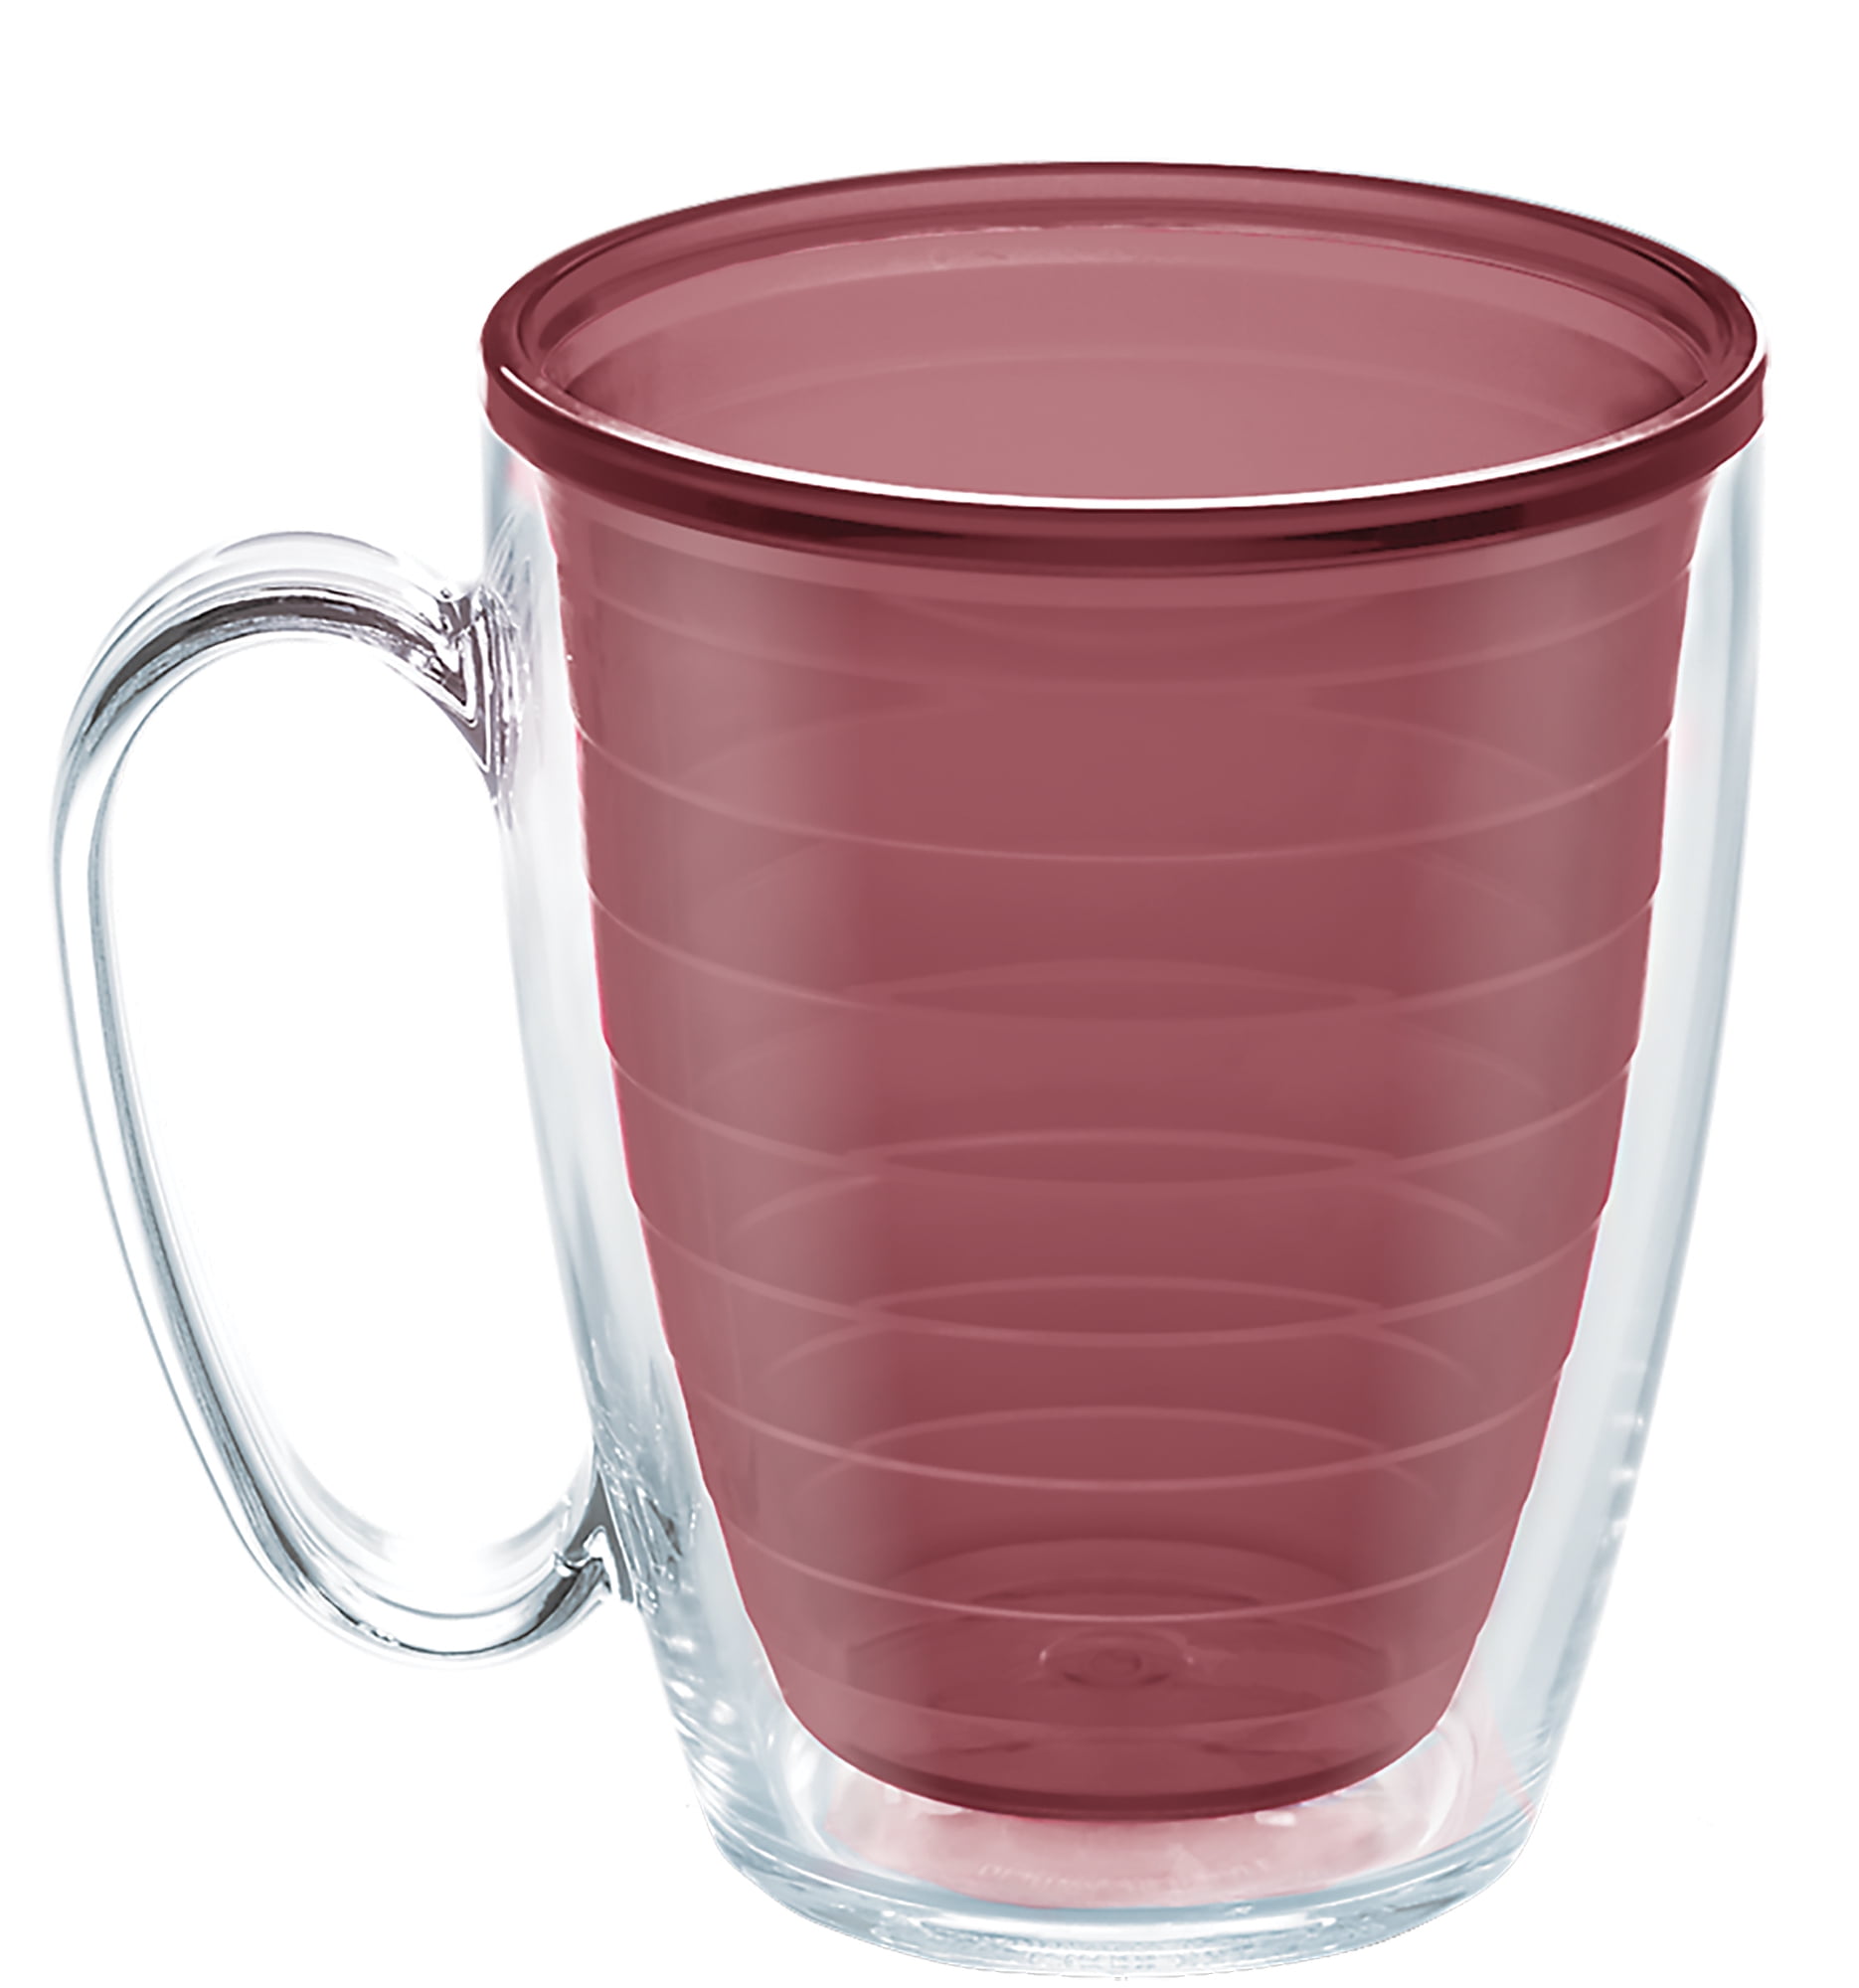 SKINNY SINGLE GLASS STRAW - COFFEE, TEA, WINE, COCKTAILS– Simply